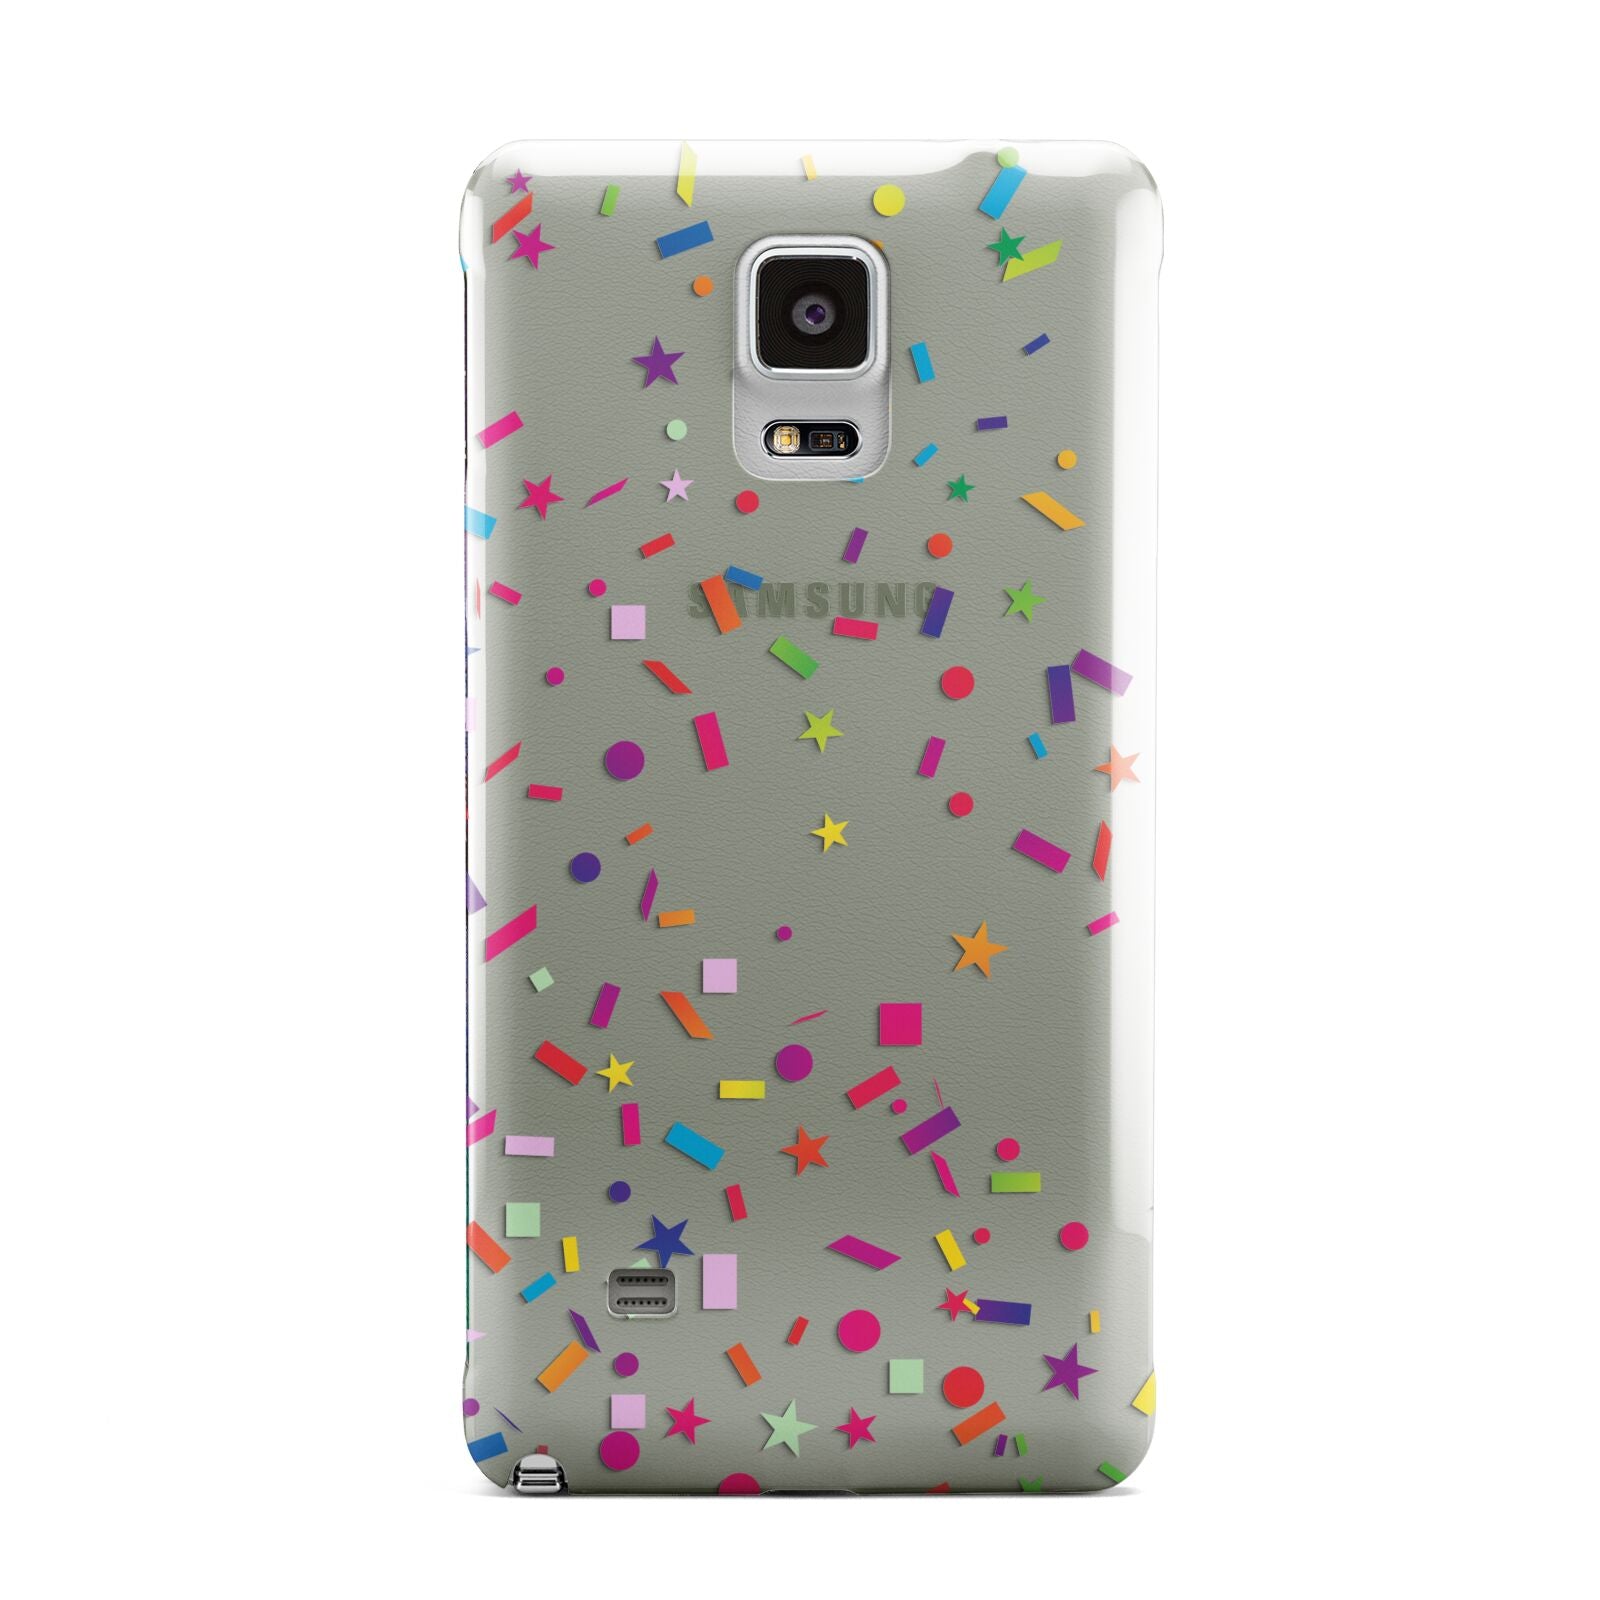 Confetti Samsung Galaxy Note 4 Case